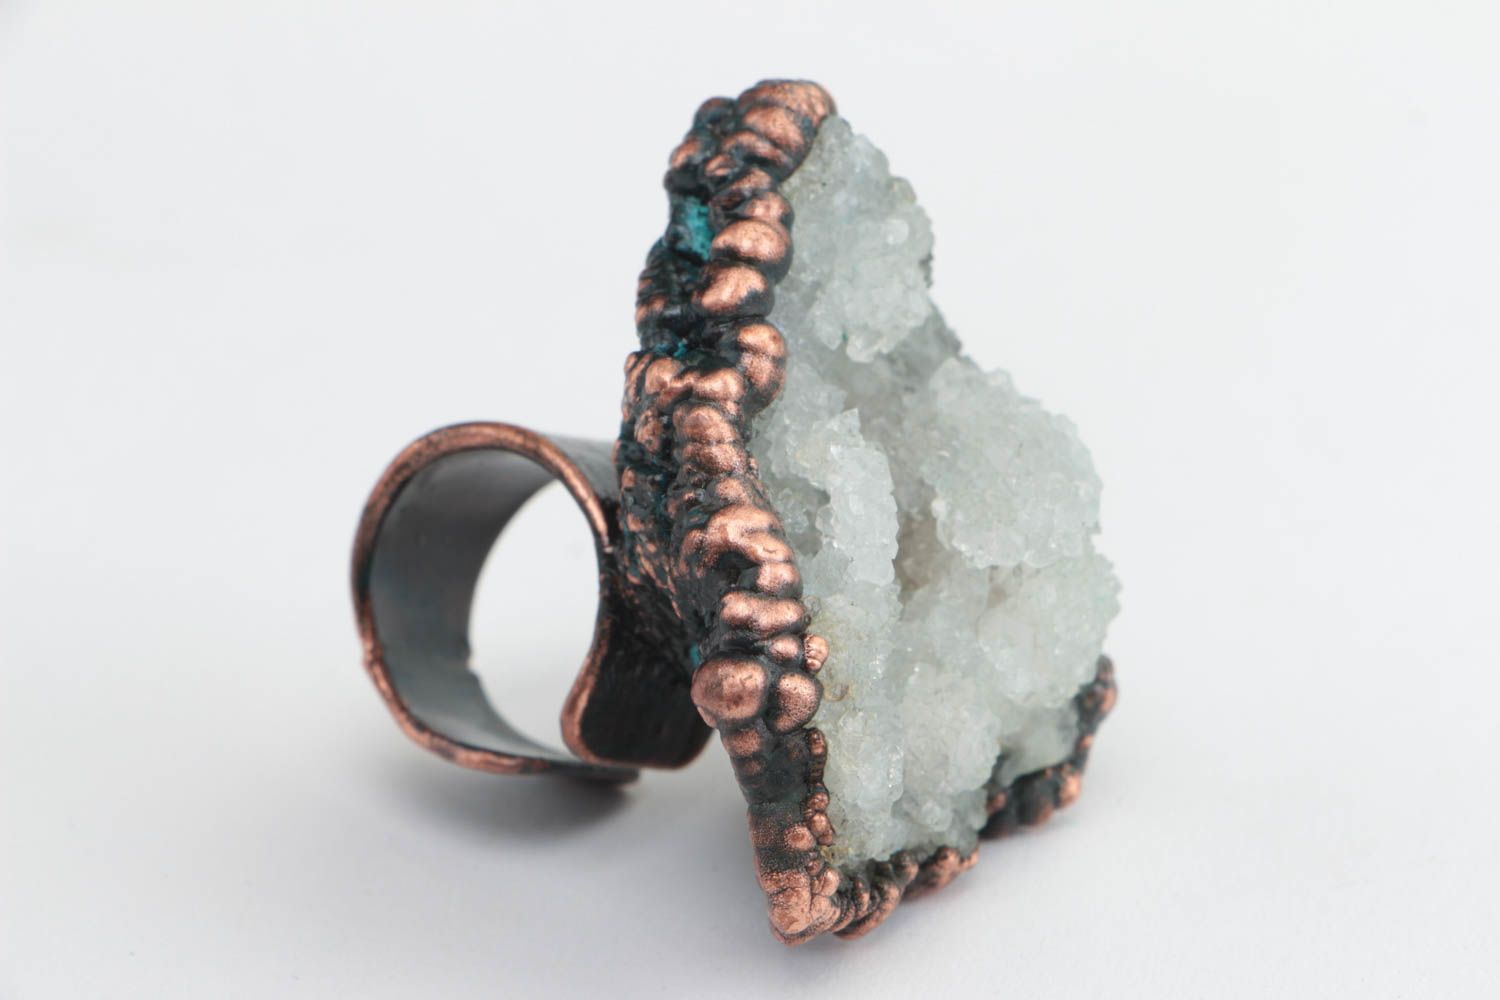 Медное кольцо с горным хрусталем объемное стильное необычной формы ручной работы фото 2